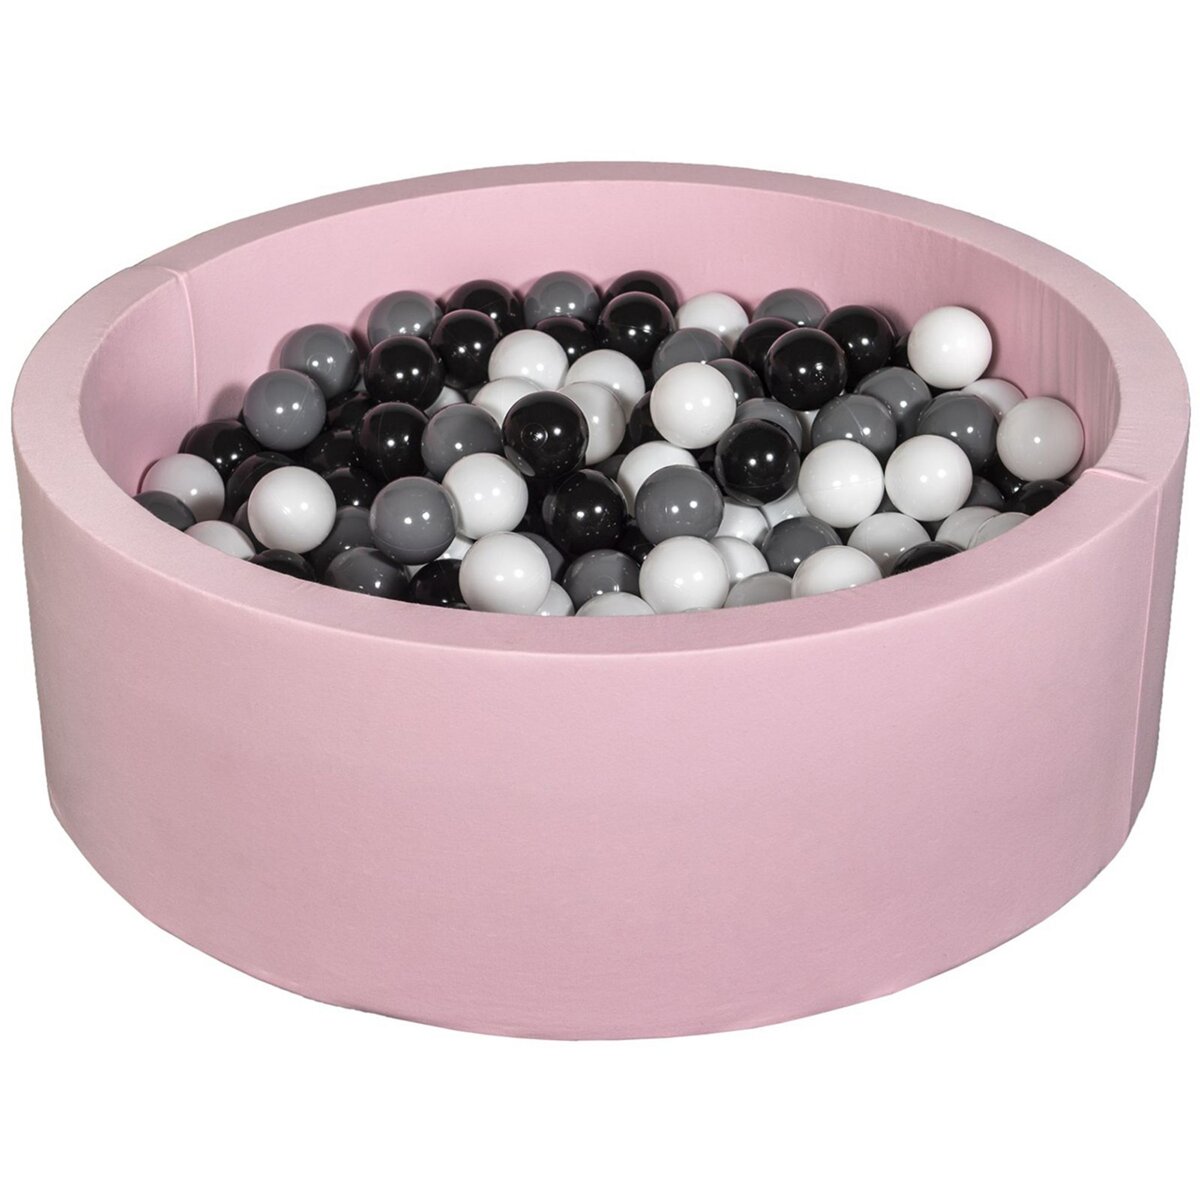  Piscine à balles Aire de jeu + 200 balles rose noir,blanc,gris